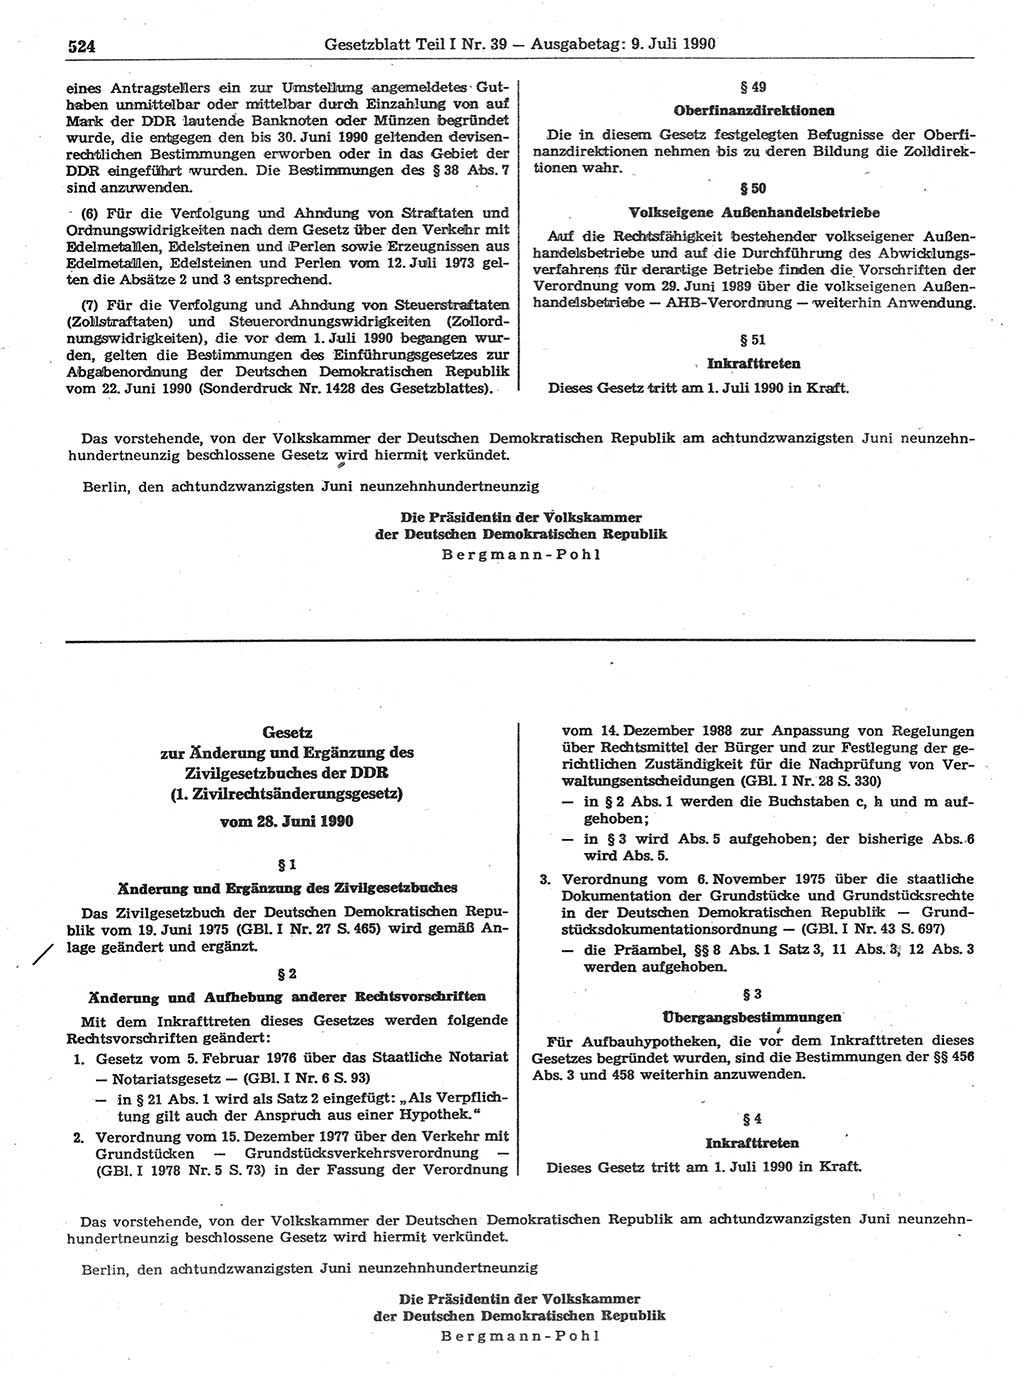 Gesetzblatt (GBl.) der Deutschen Demokratischen Republik (DDR) Teil Ⅰ 1990, Seite 524 (GBl. DDR Ⅰ 1990, S. 524)